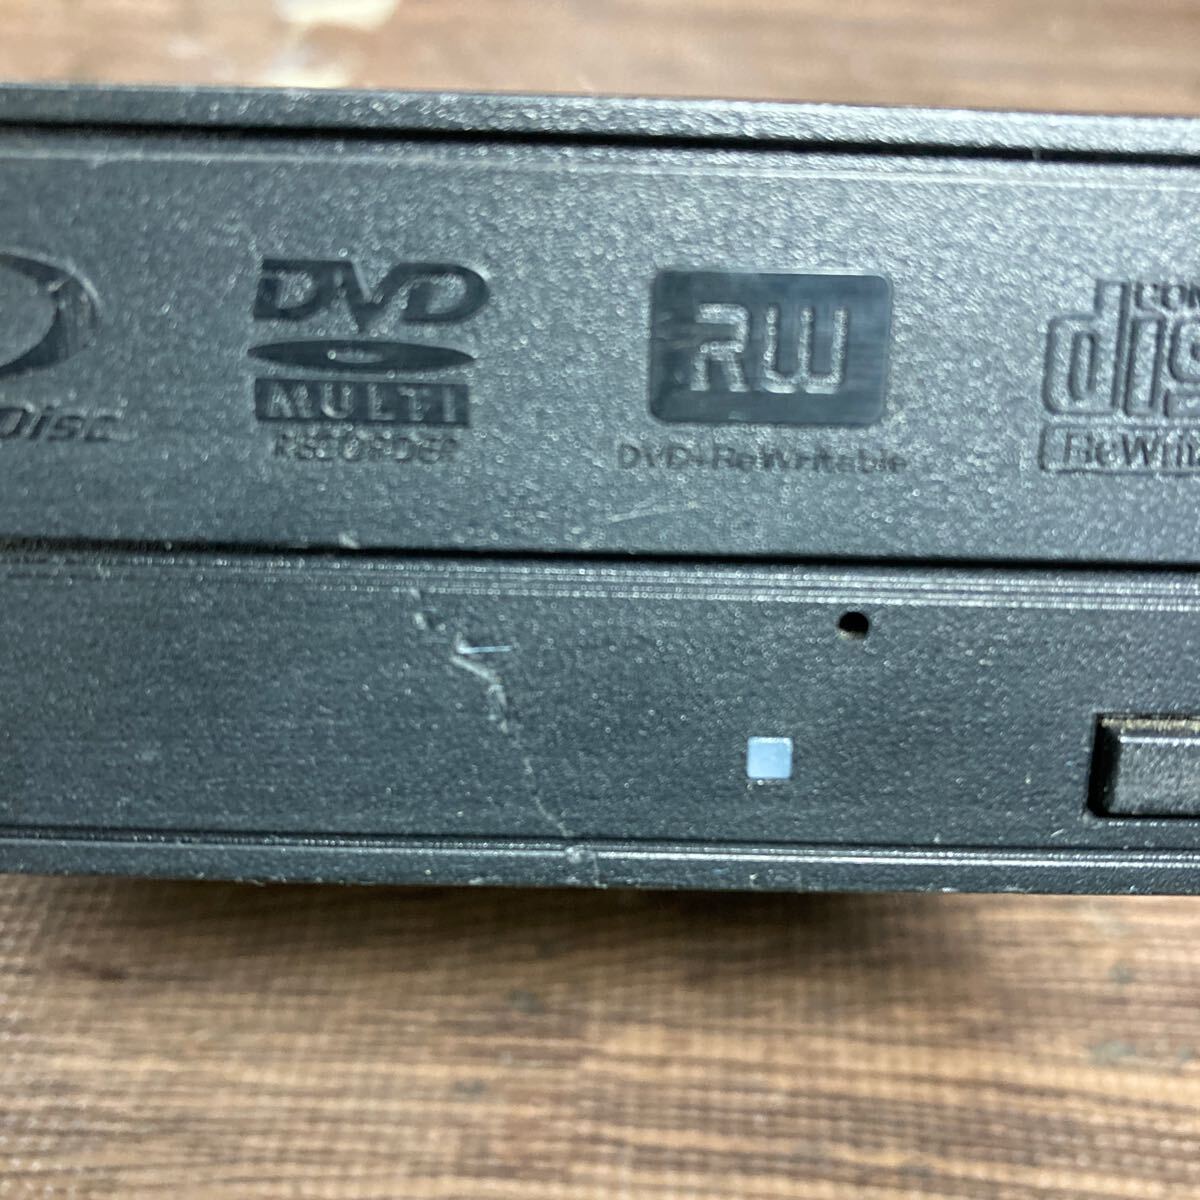 GK 激安 DV-216 Blu-ray ドライブ DVD デスクトップ用 Hitachi LG BH30N 2010年製 Blu-ray、DVD再生確認済み 中古品_傷あり